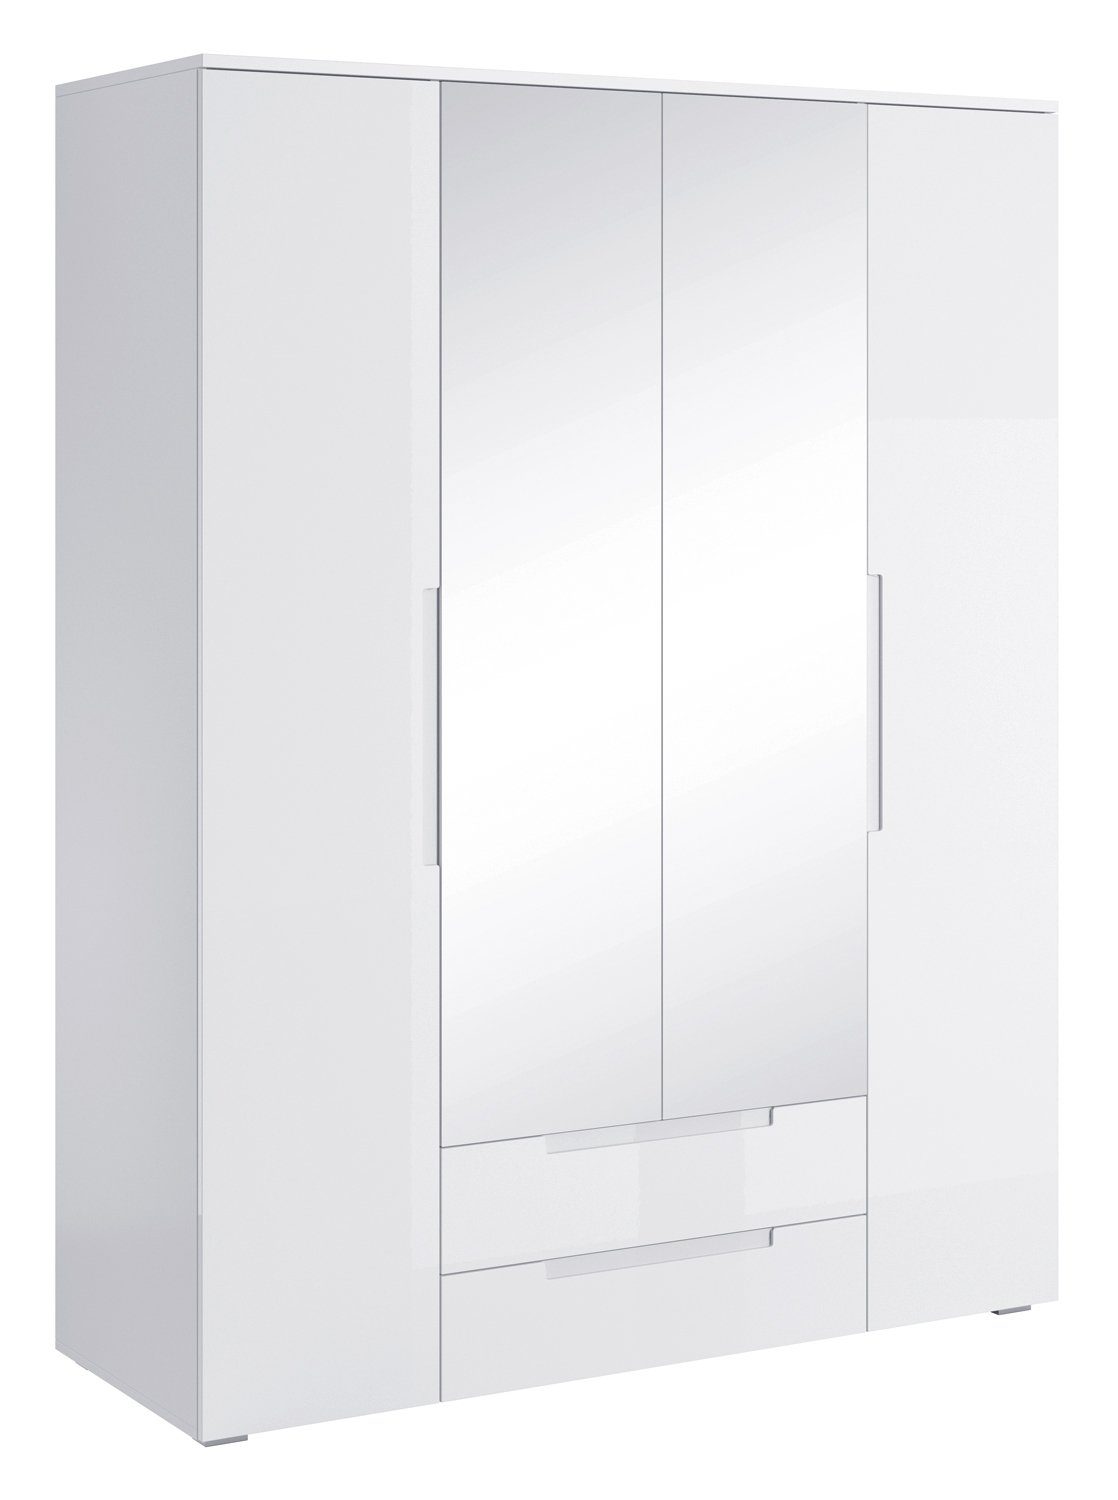 Pol-Power Drehtürenschrank Kleiderschrank SPICE, B 160 cm x H 208 cm, Weiß Hochglanz, 4 Türen, 2 Schubladen, mit Spiegel